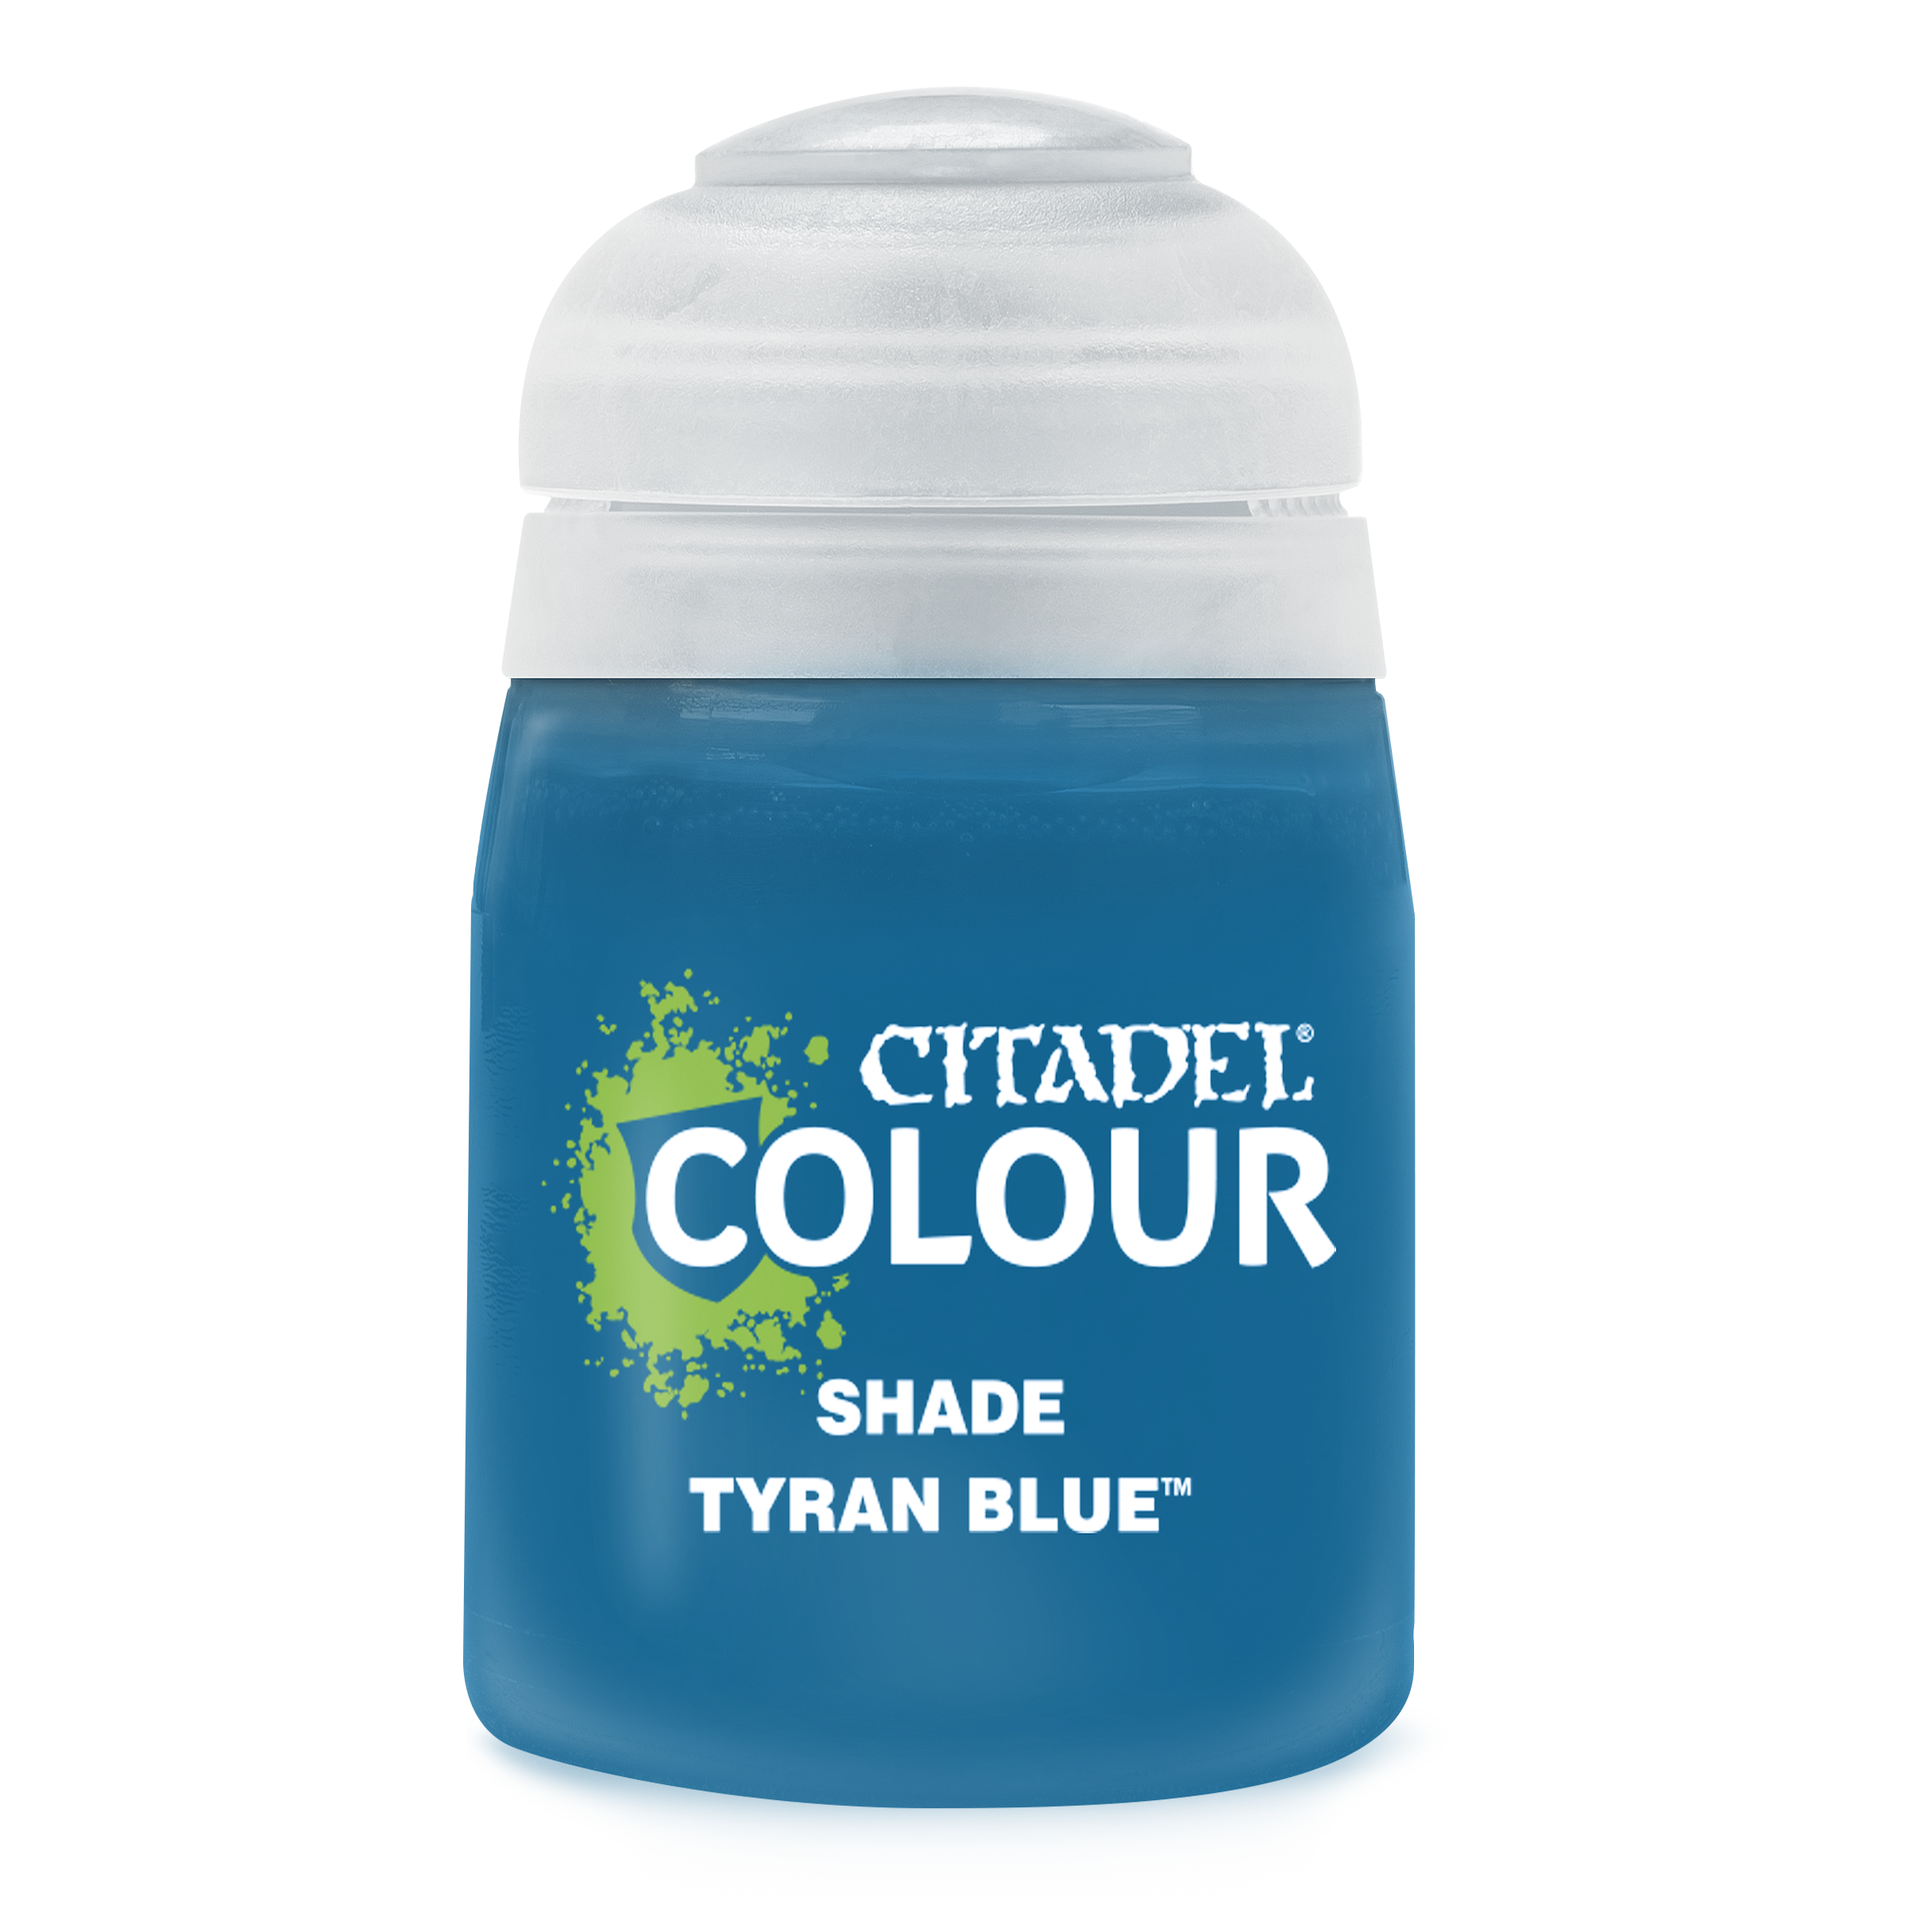 Shade: Tyran Blue